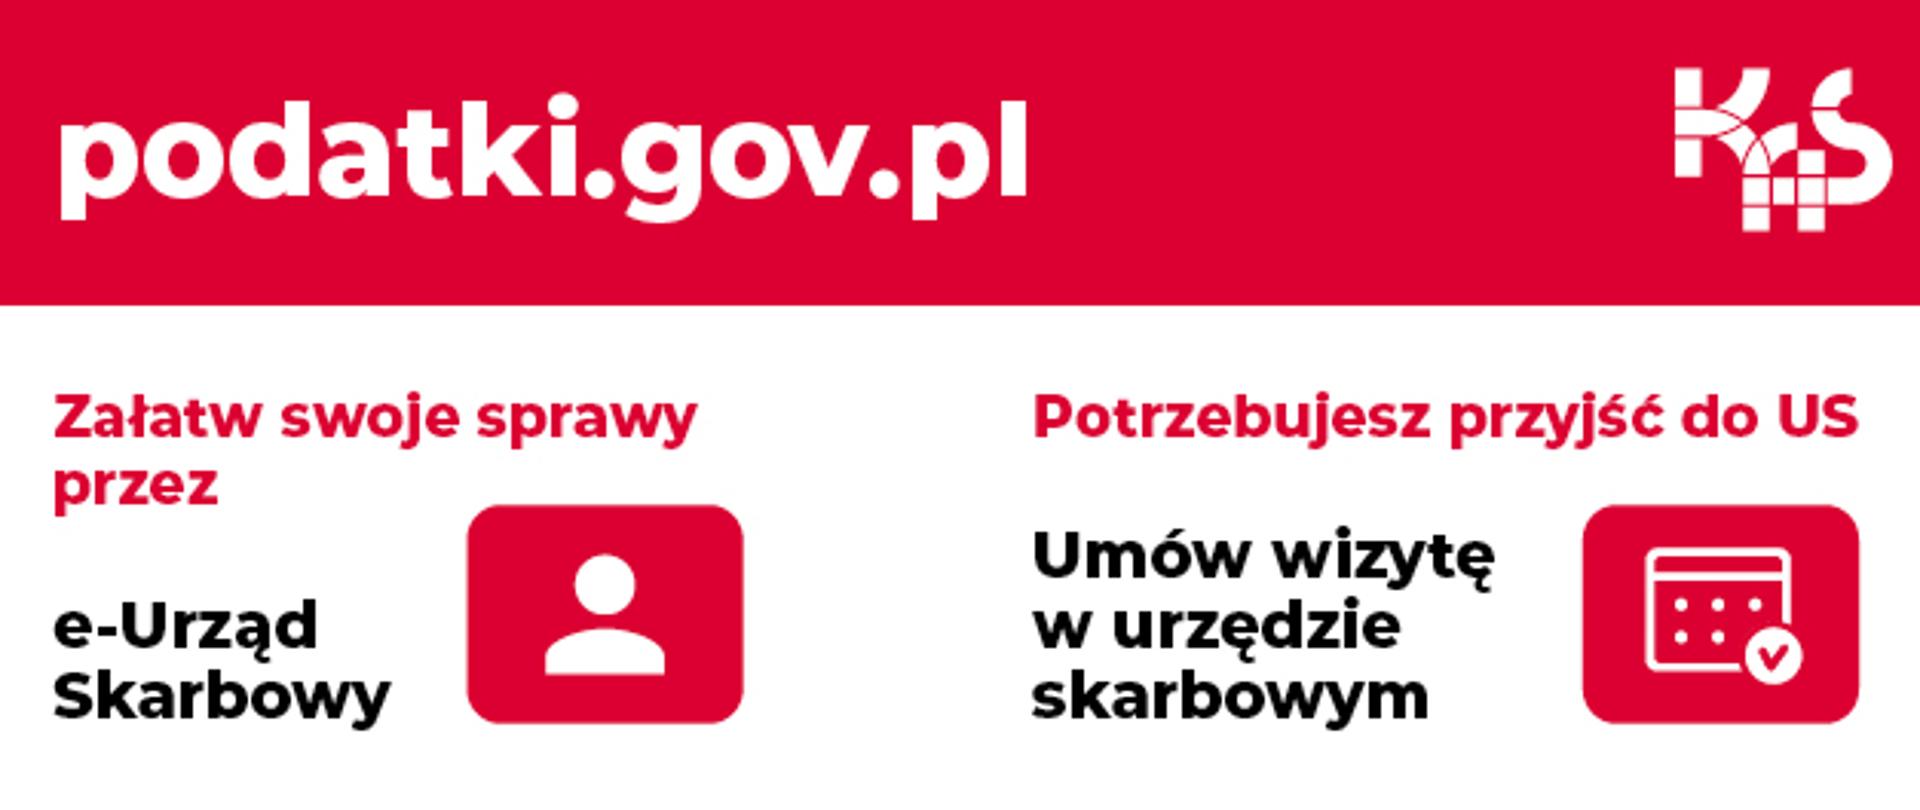 Baner promujący stronę internetową Krajowej Administracji Skarbowej www.podatki.gov.pl